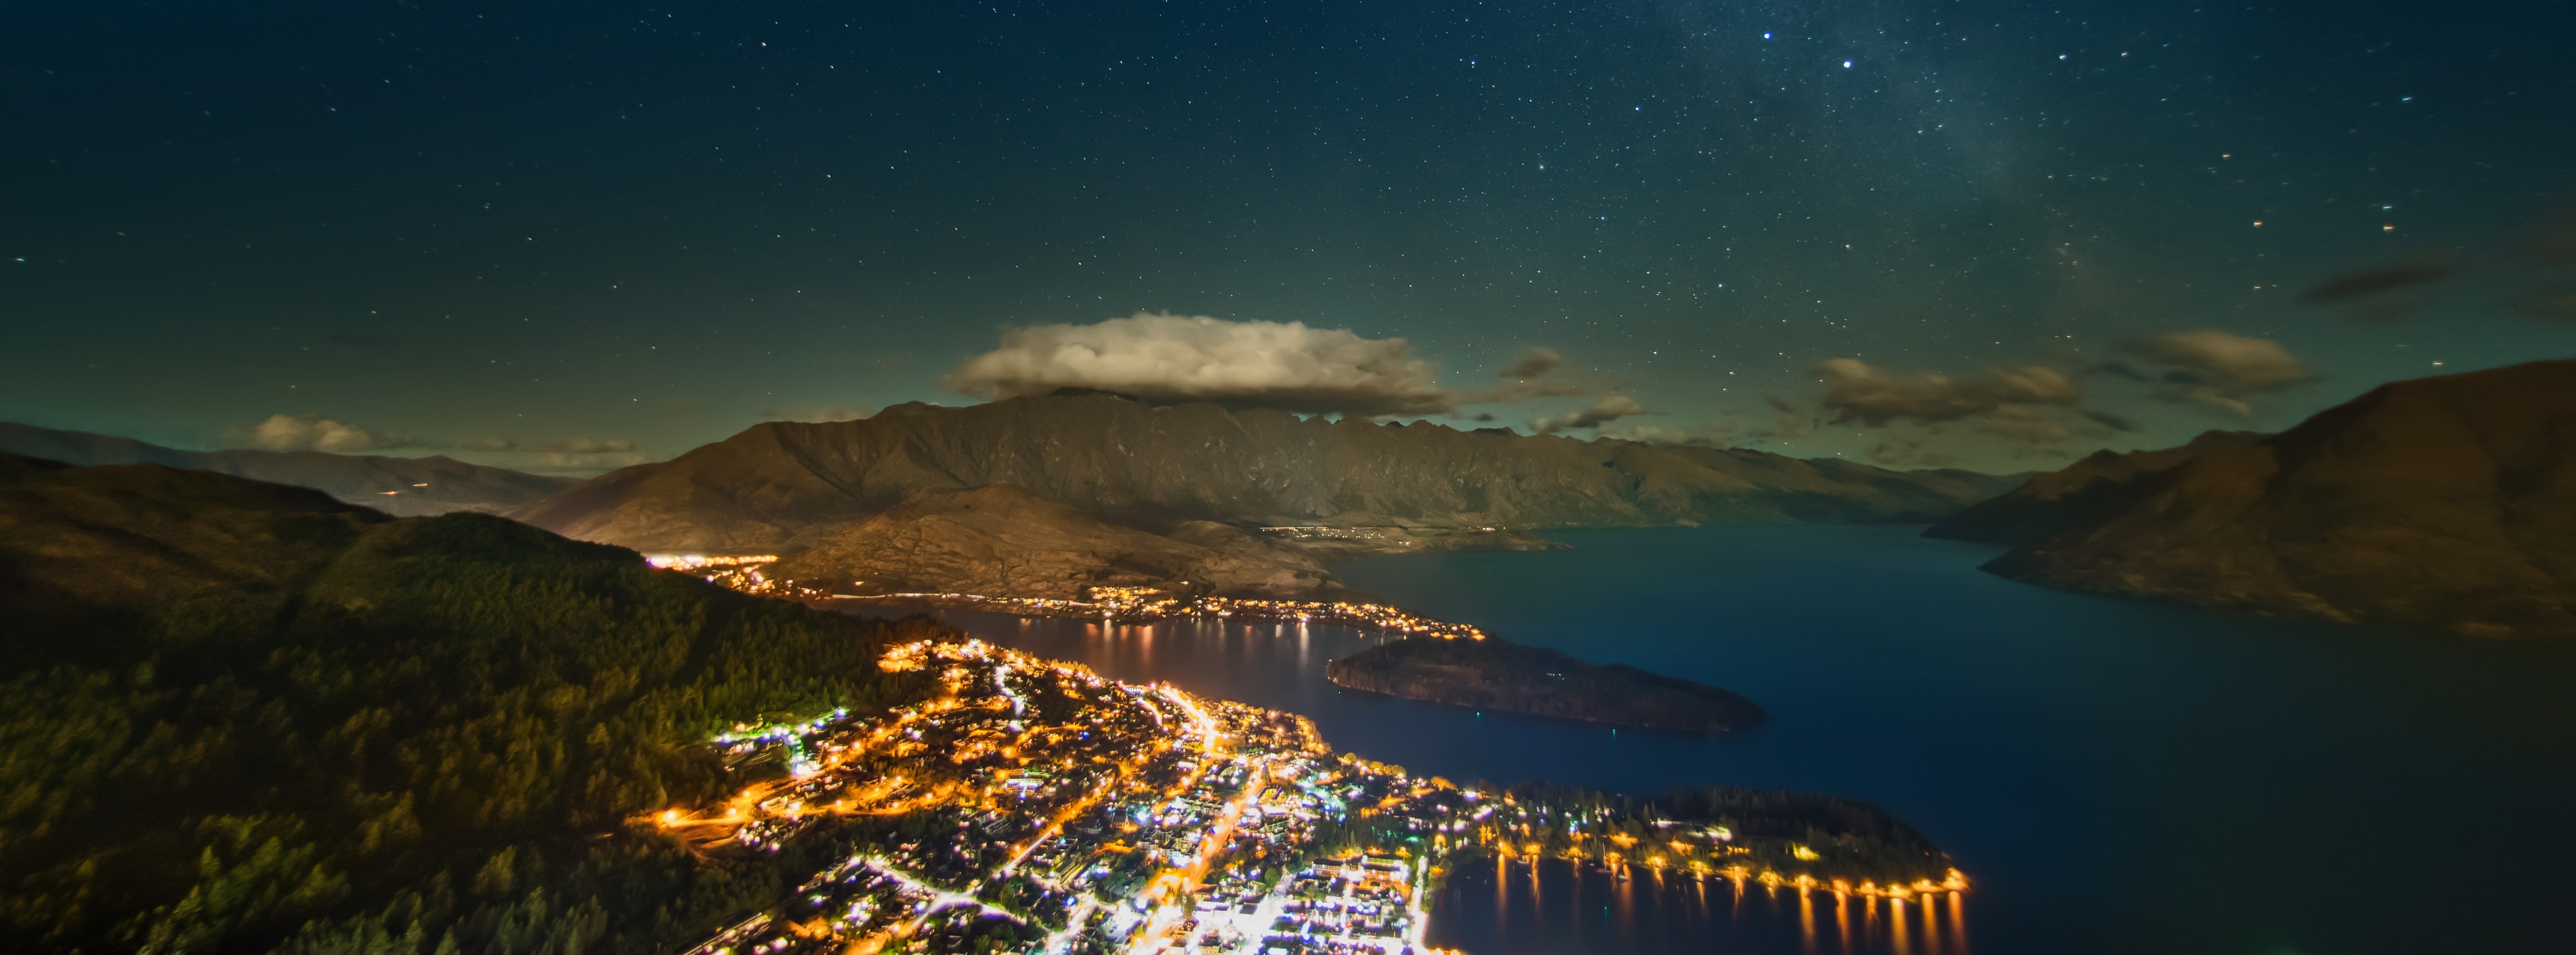 The Milky Way over Queenstown, blue water, Oceania, New Zealand